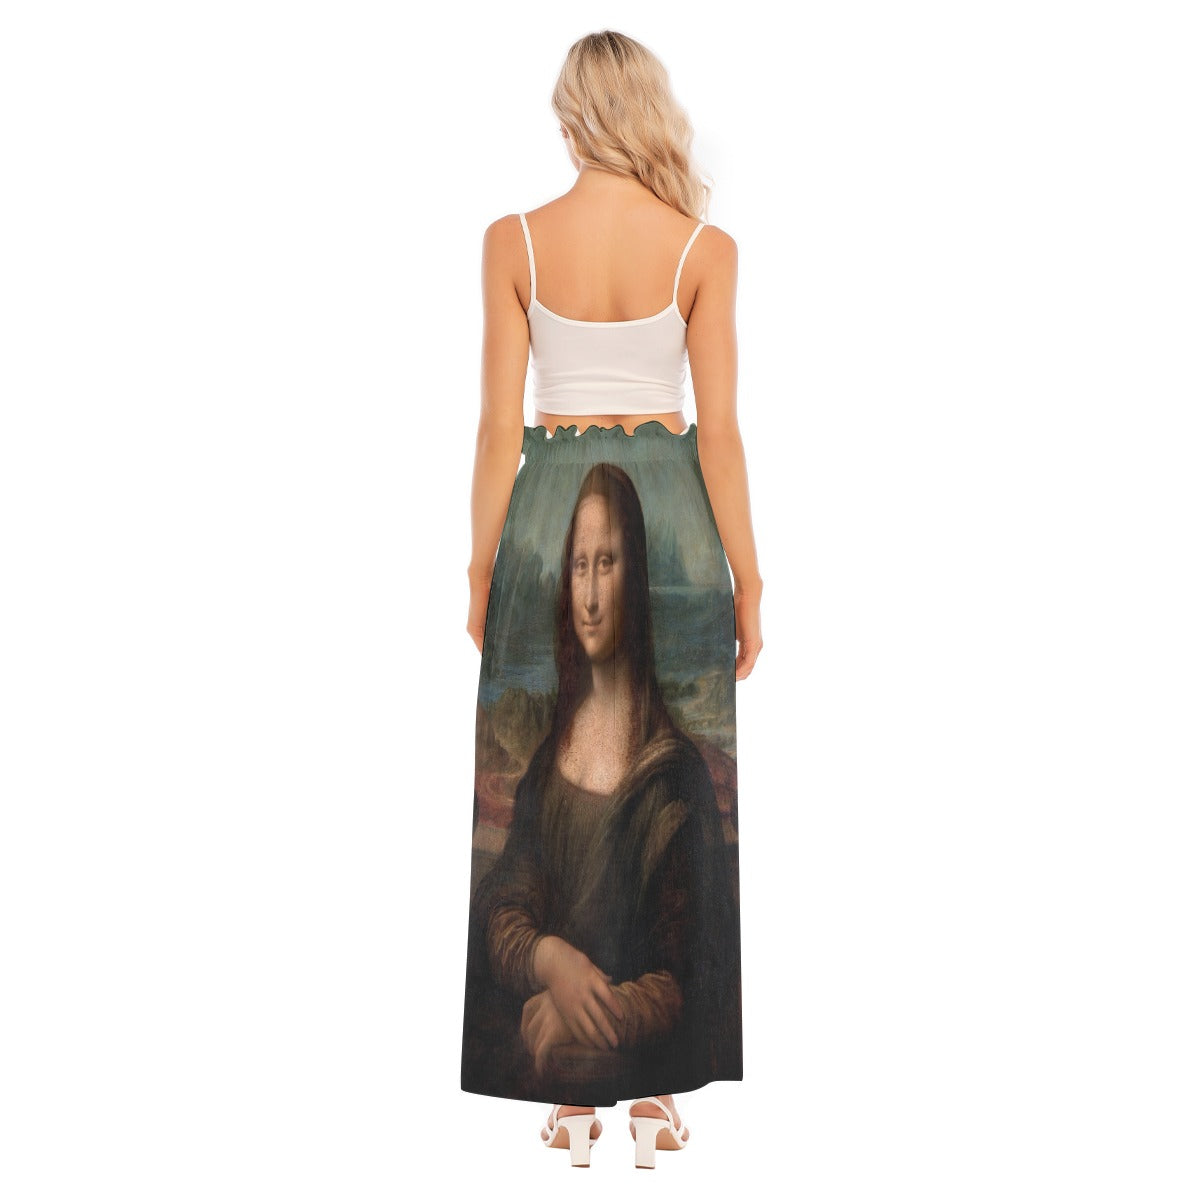 Vintage-inspired Fashion - Mona Lisa Print Skirt